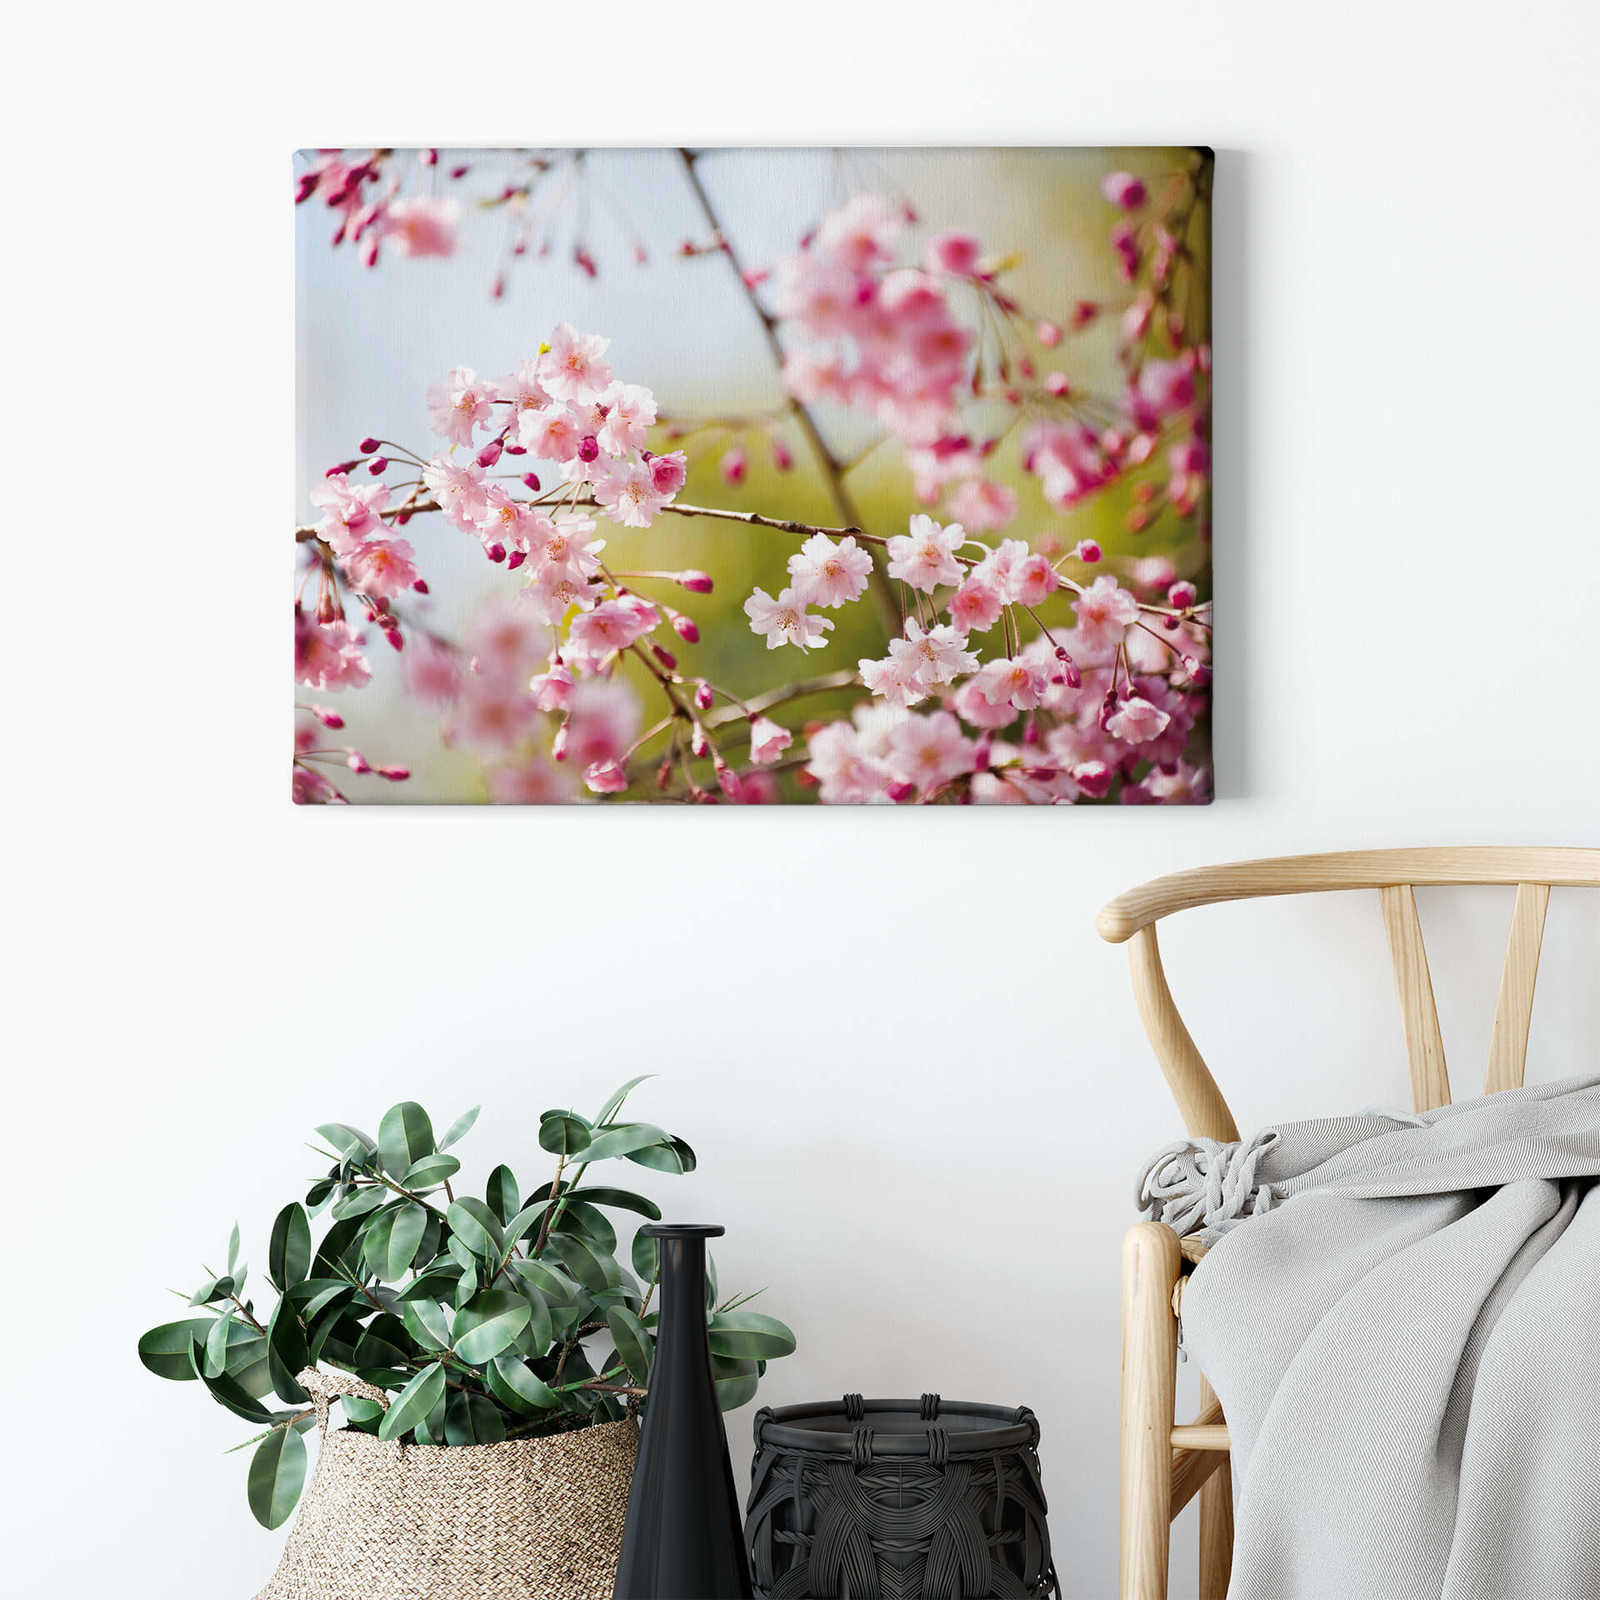             Pittura su tela naturale con motivo di fiori di ciliegio - 0,70 m x 0,50 m
        